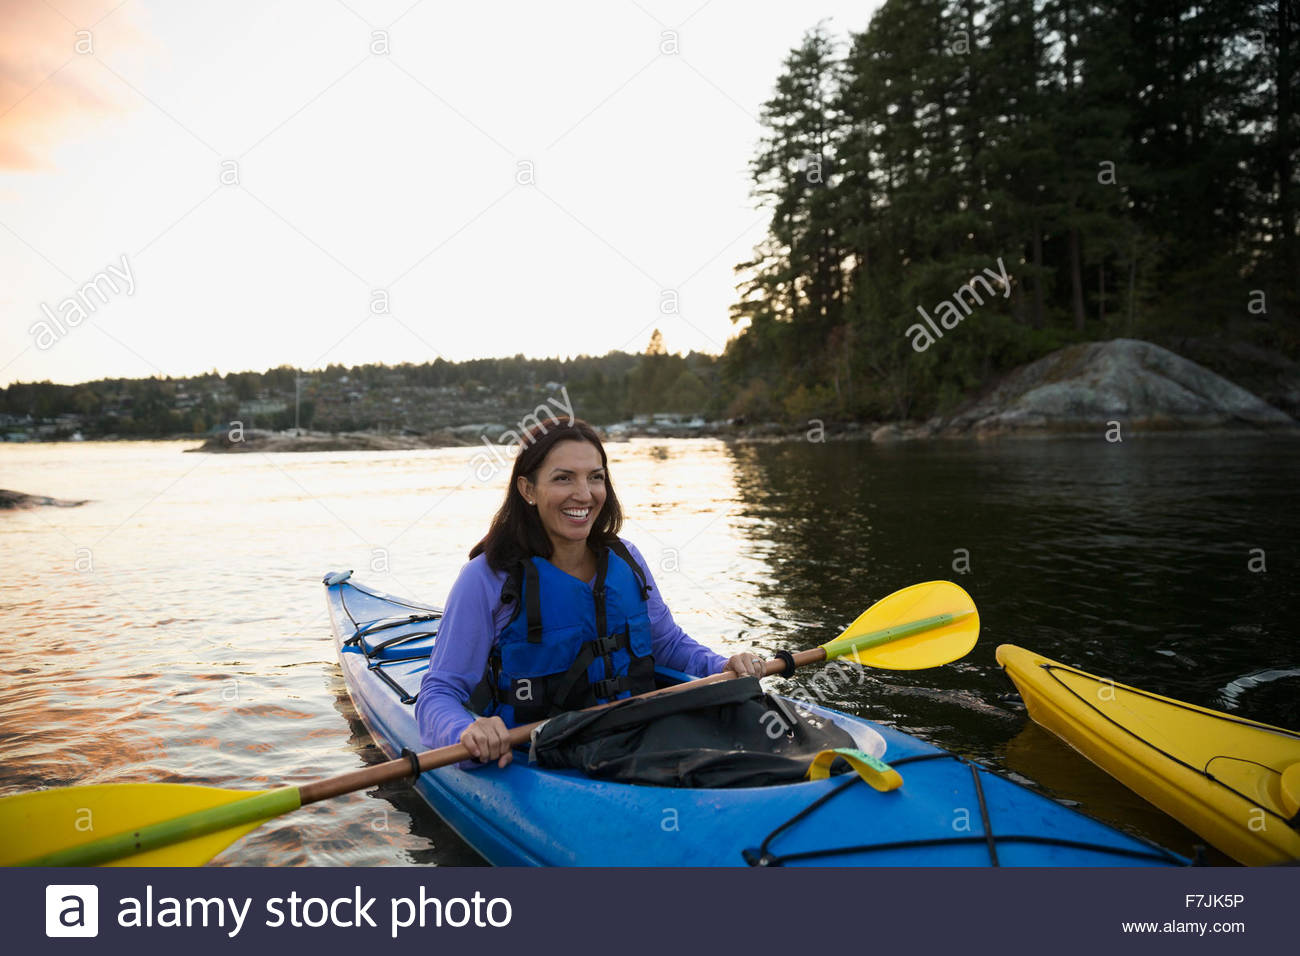 Smiling woman kayaking on lake at sunset Stock Photo